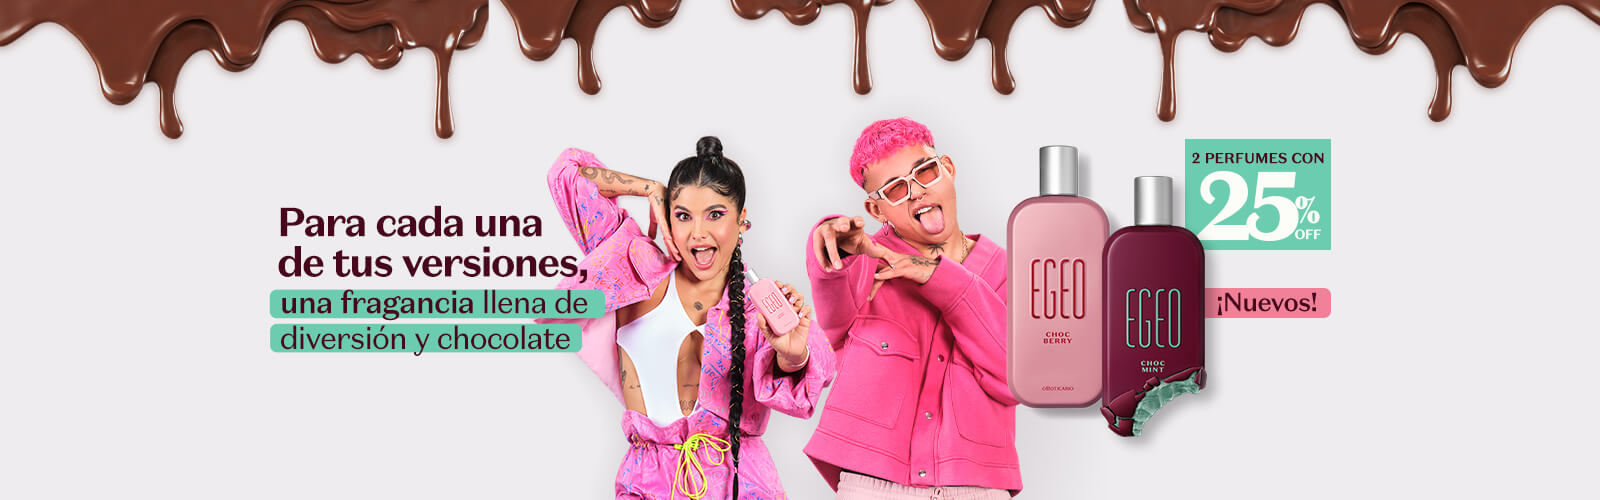 Combo Shampoo + Acondicionador + Mascara capilar fuente de nutrición Match en Oboticário Colombia